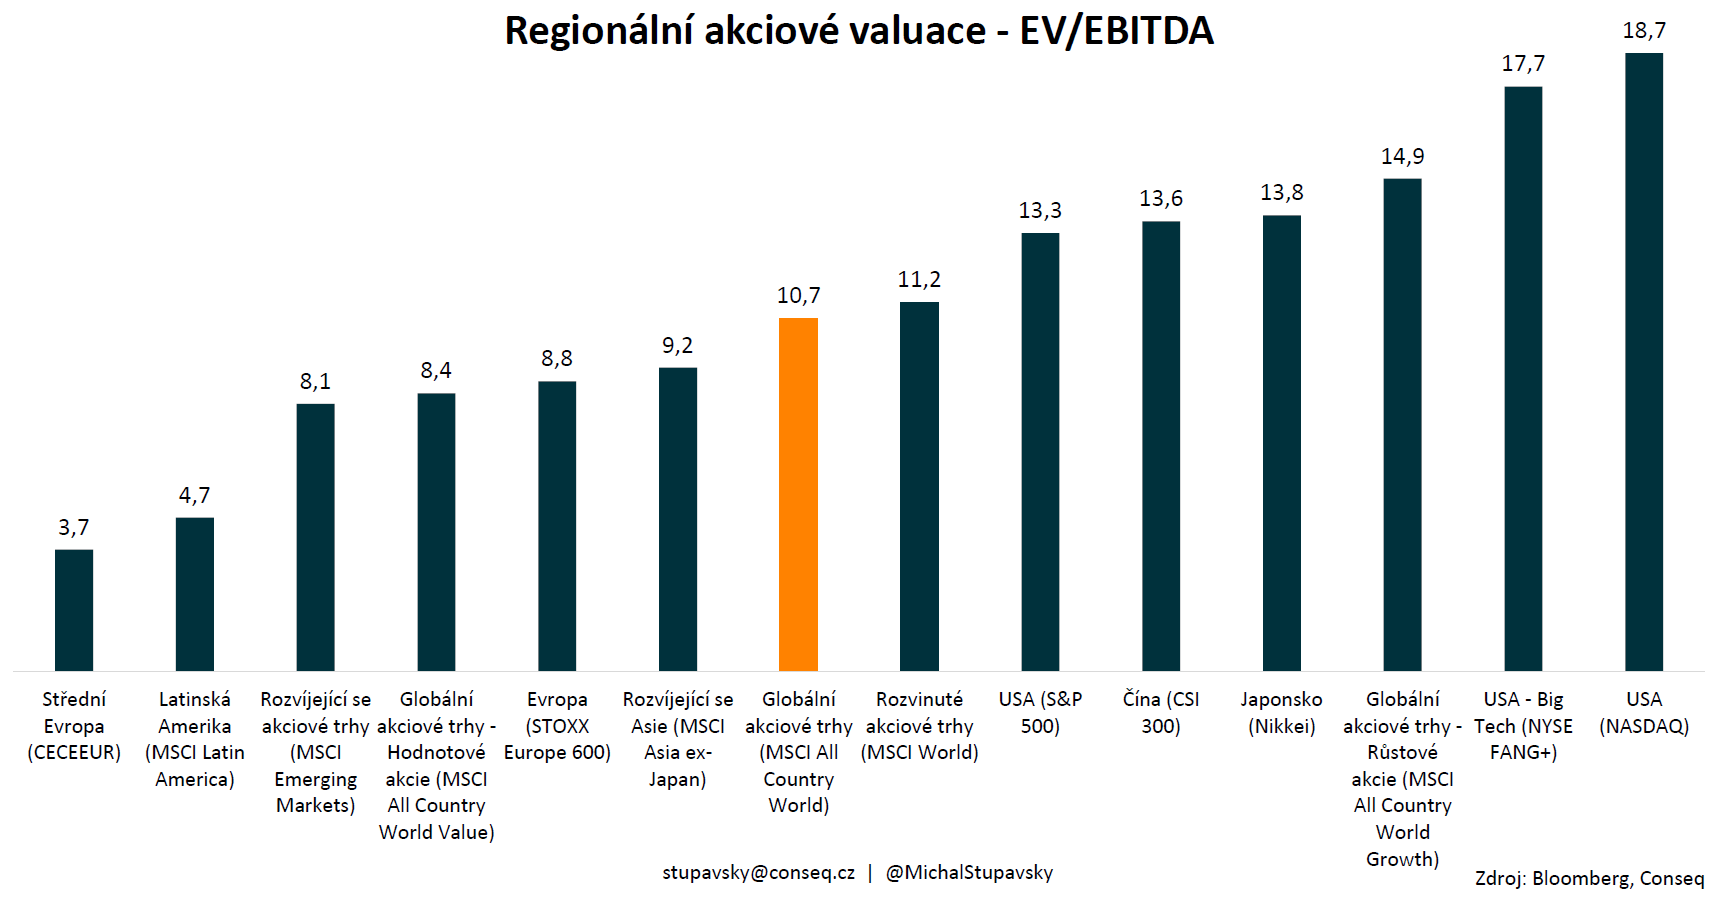 Valuace akcií v jednotlivých regionech